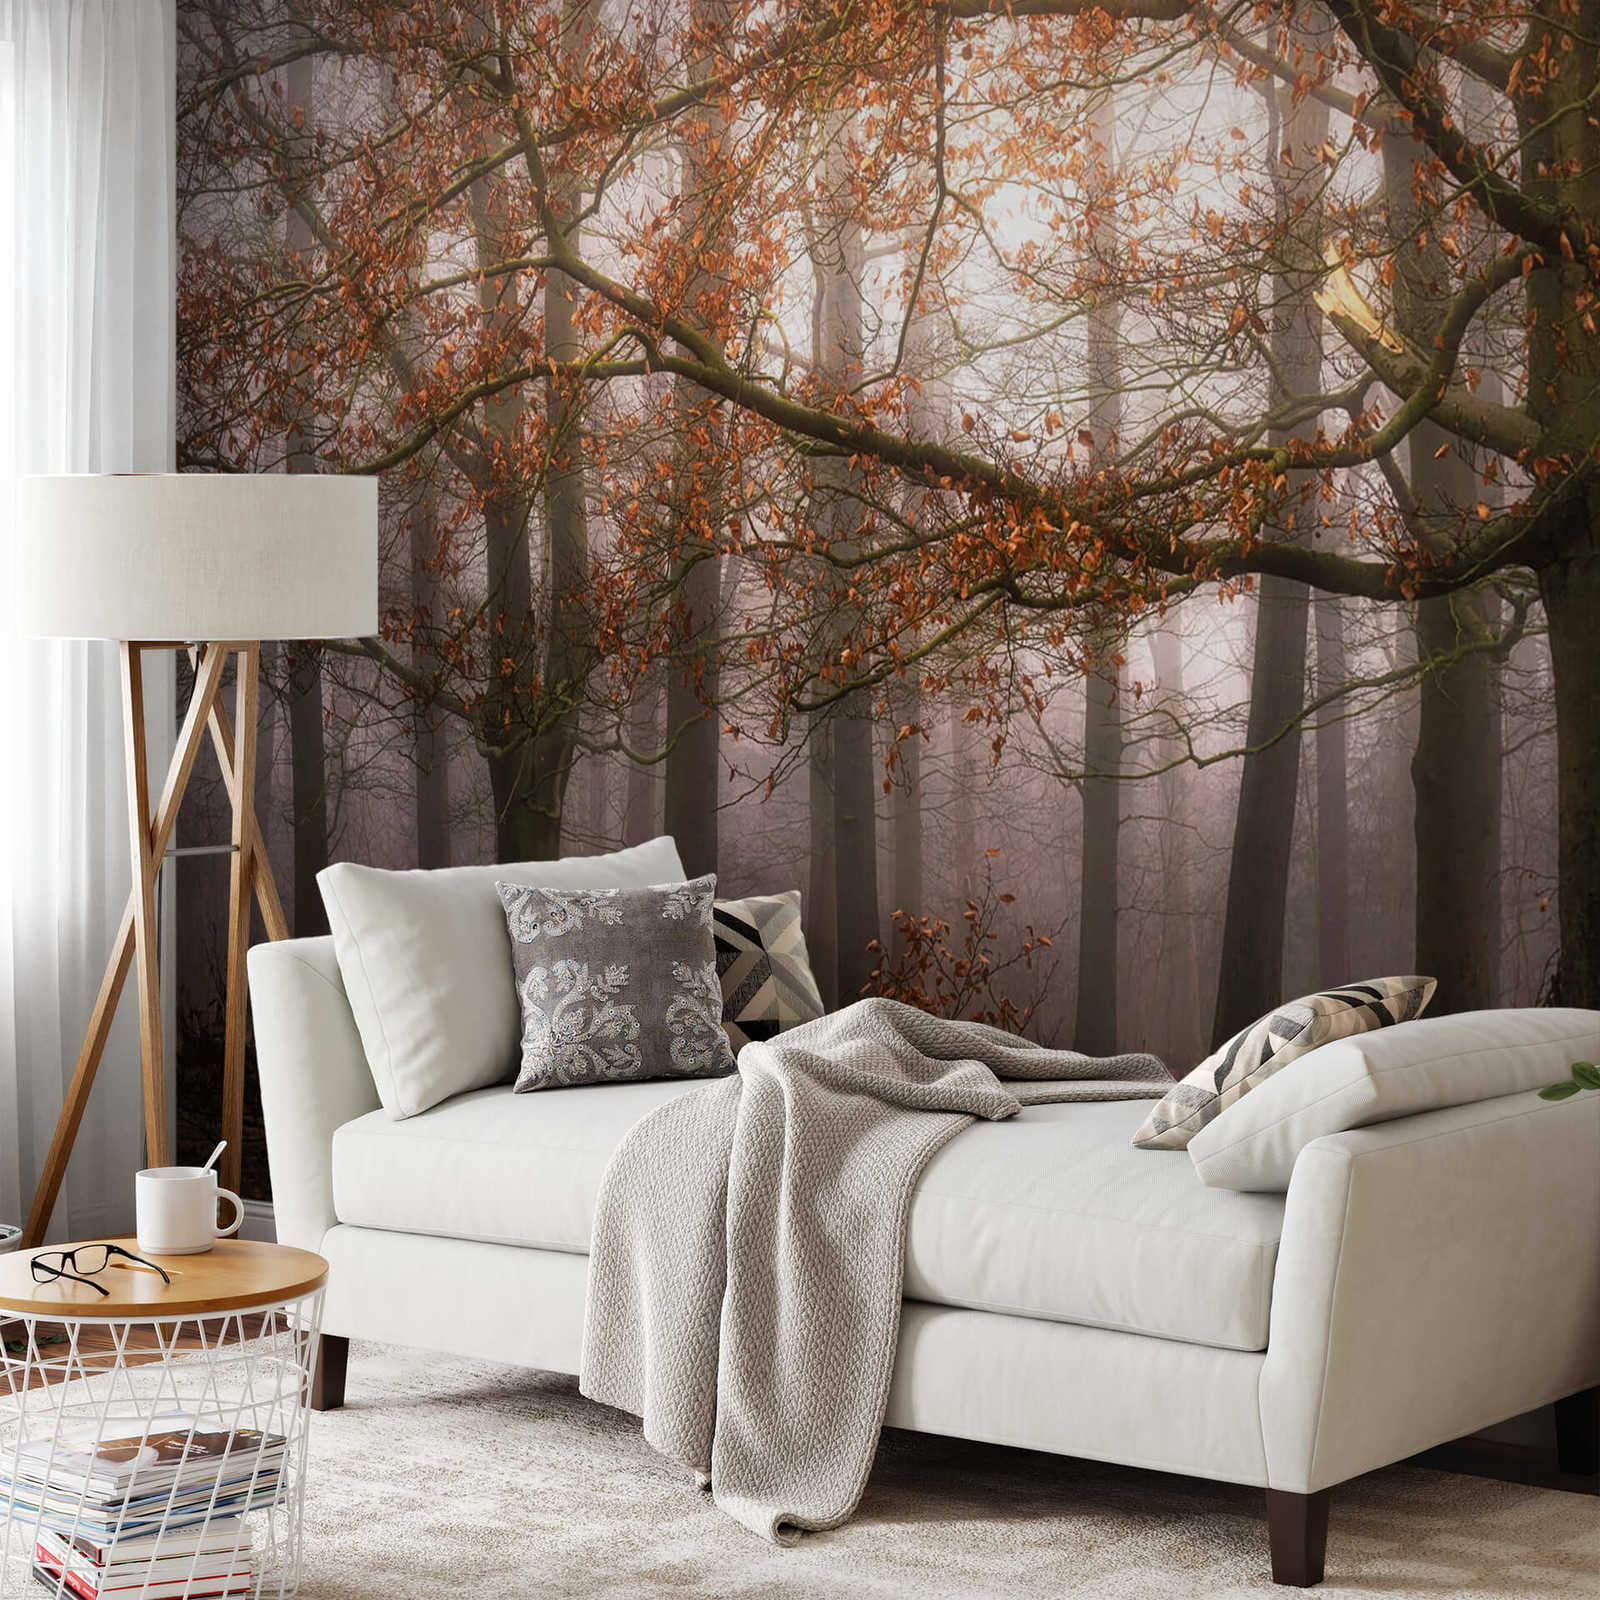             Photo wallpaper forest in autumn - brown, orange
        